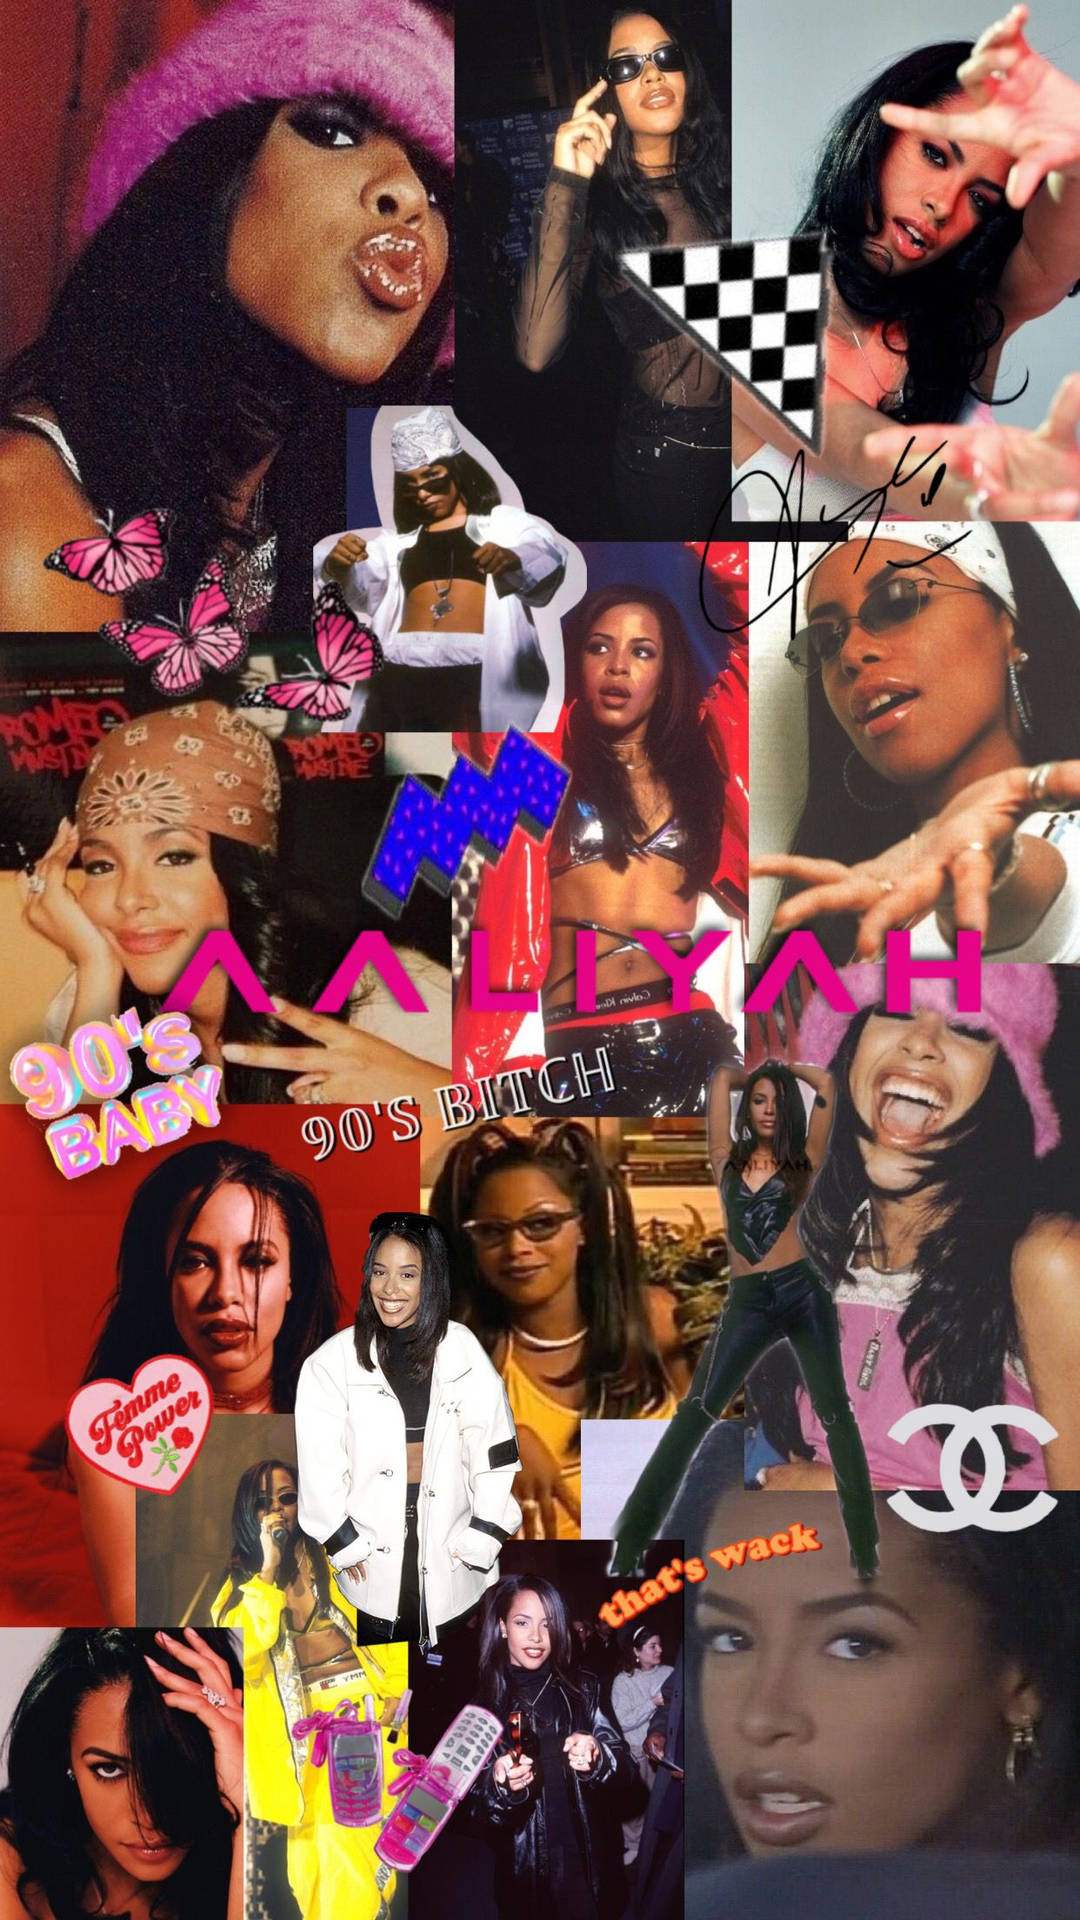 Densenta Aaliyah, En Ikon I Musikbranschen. Wallpaper